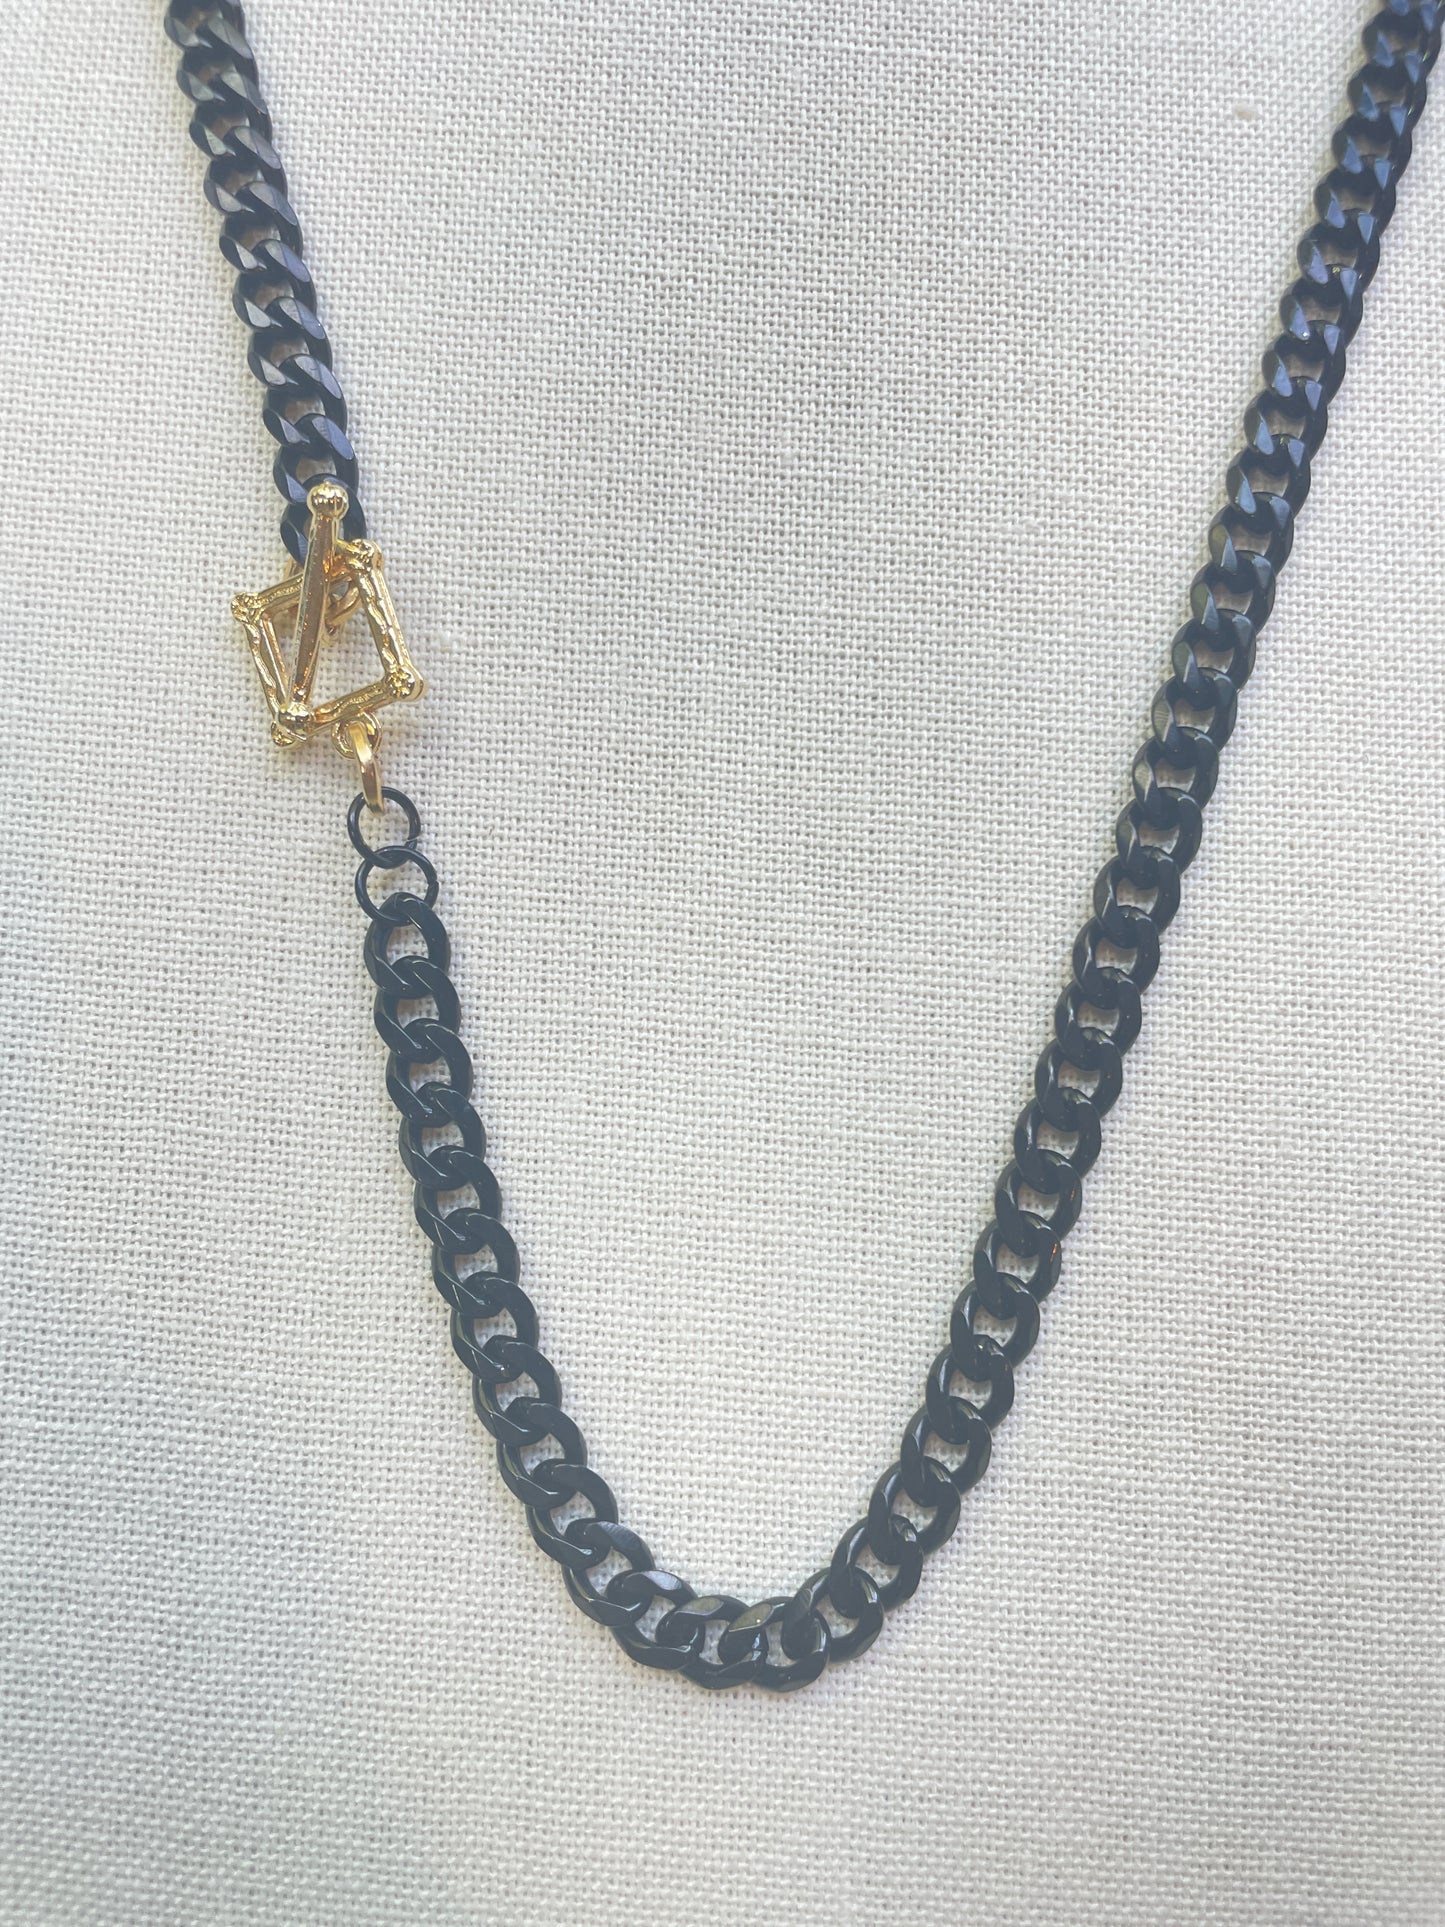 Black and Gold Chunky Necklace/Bracelet